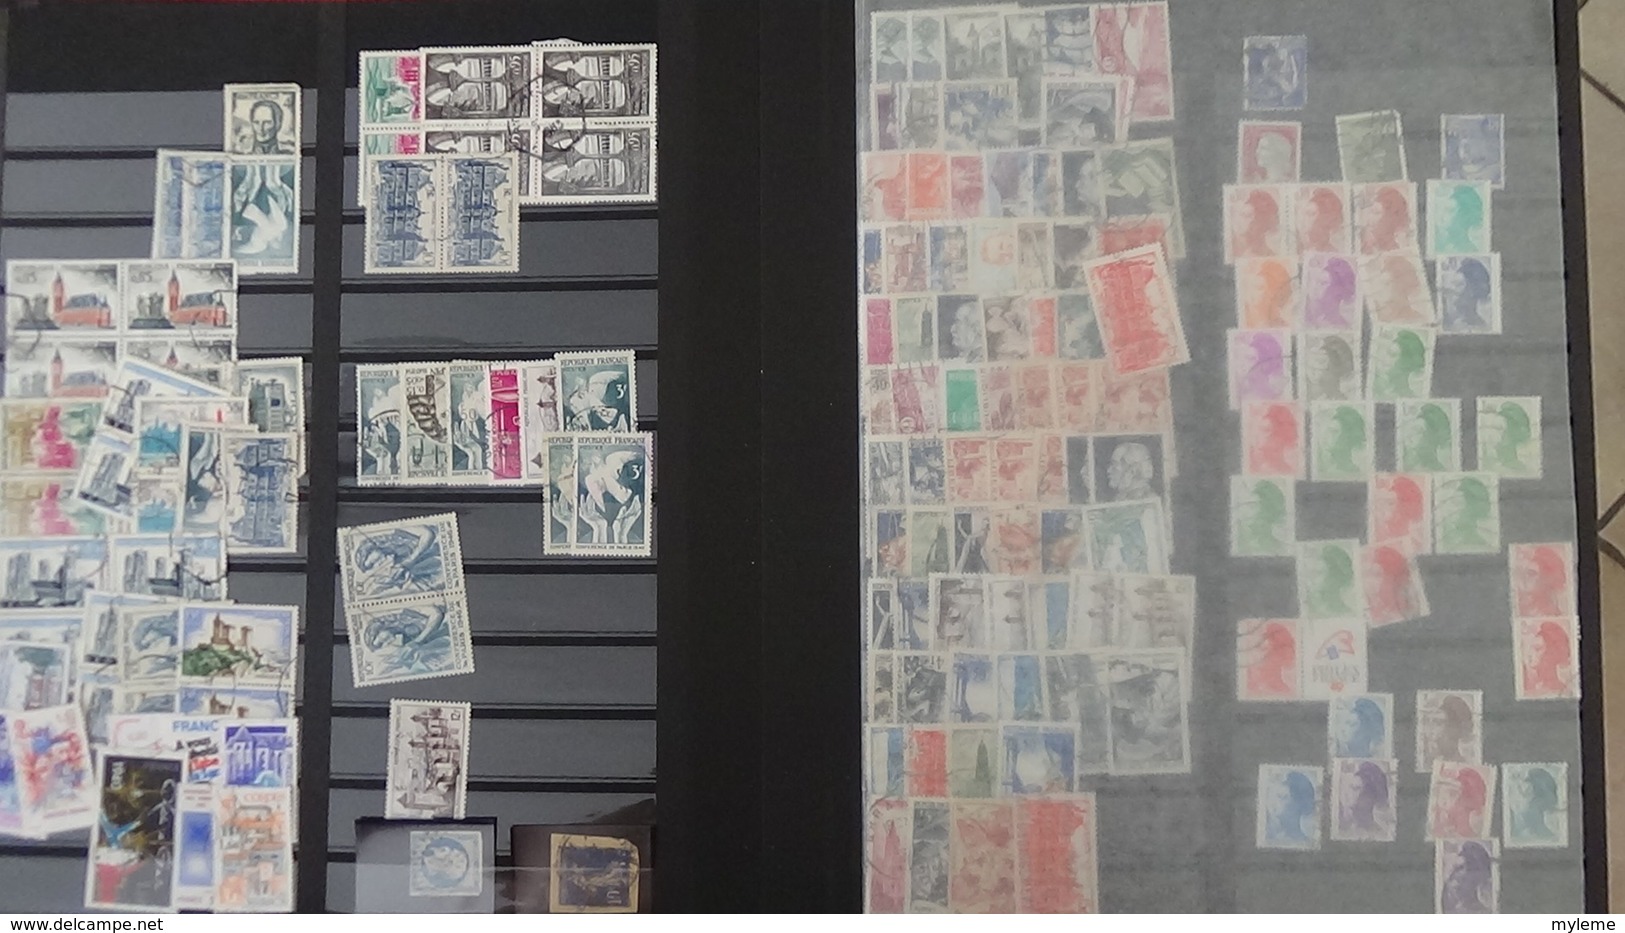 Gros carton dont feuilles N° 842A + 843 ** + timbres ** an 40 + albums remplis de timbres oblitérés. Voir commentaires !